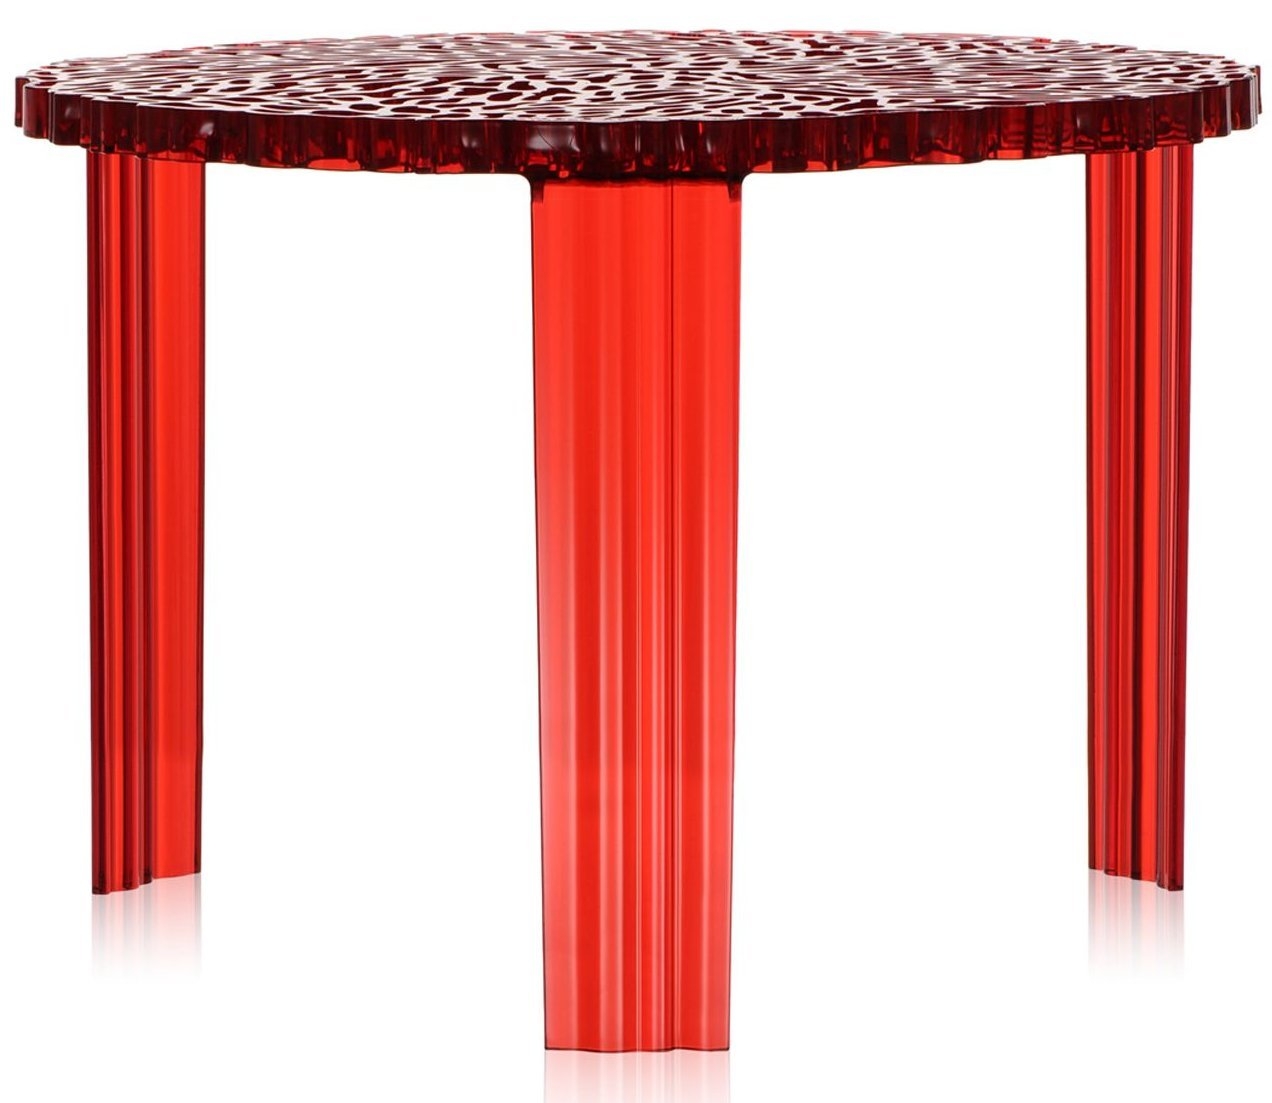 Masuta Kartell T-Table design Patricia Urquiola 50cm h 36cm rosu transparent 36cm